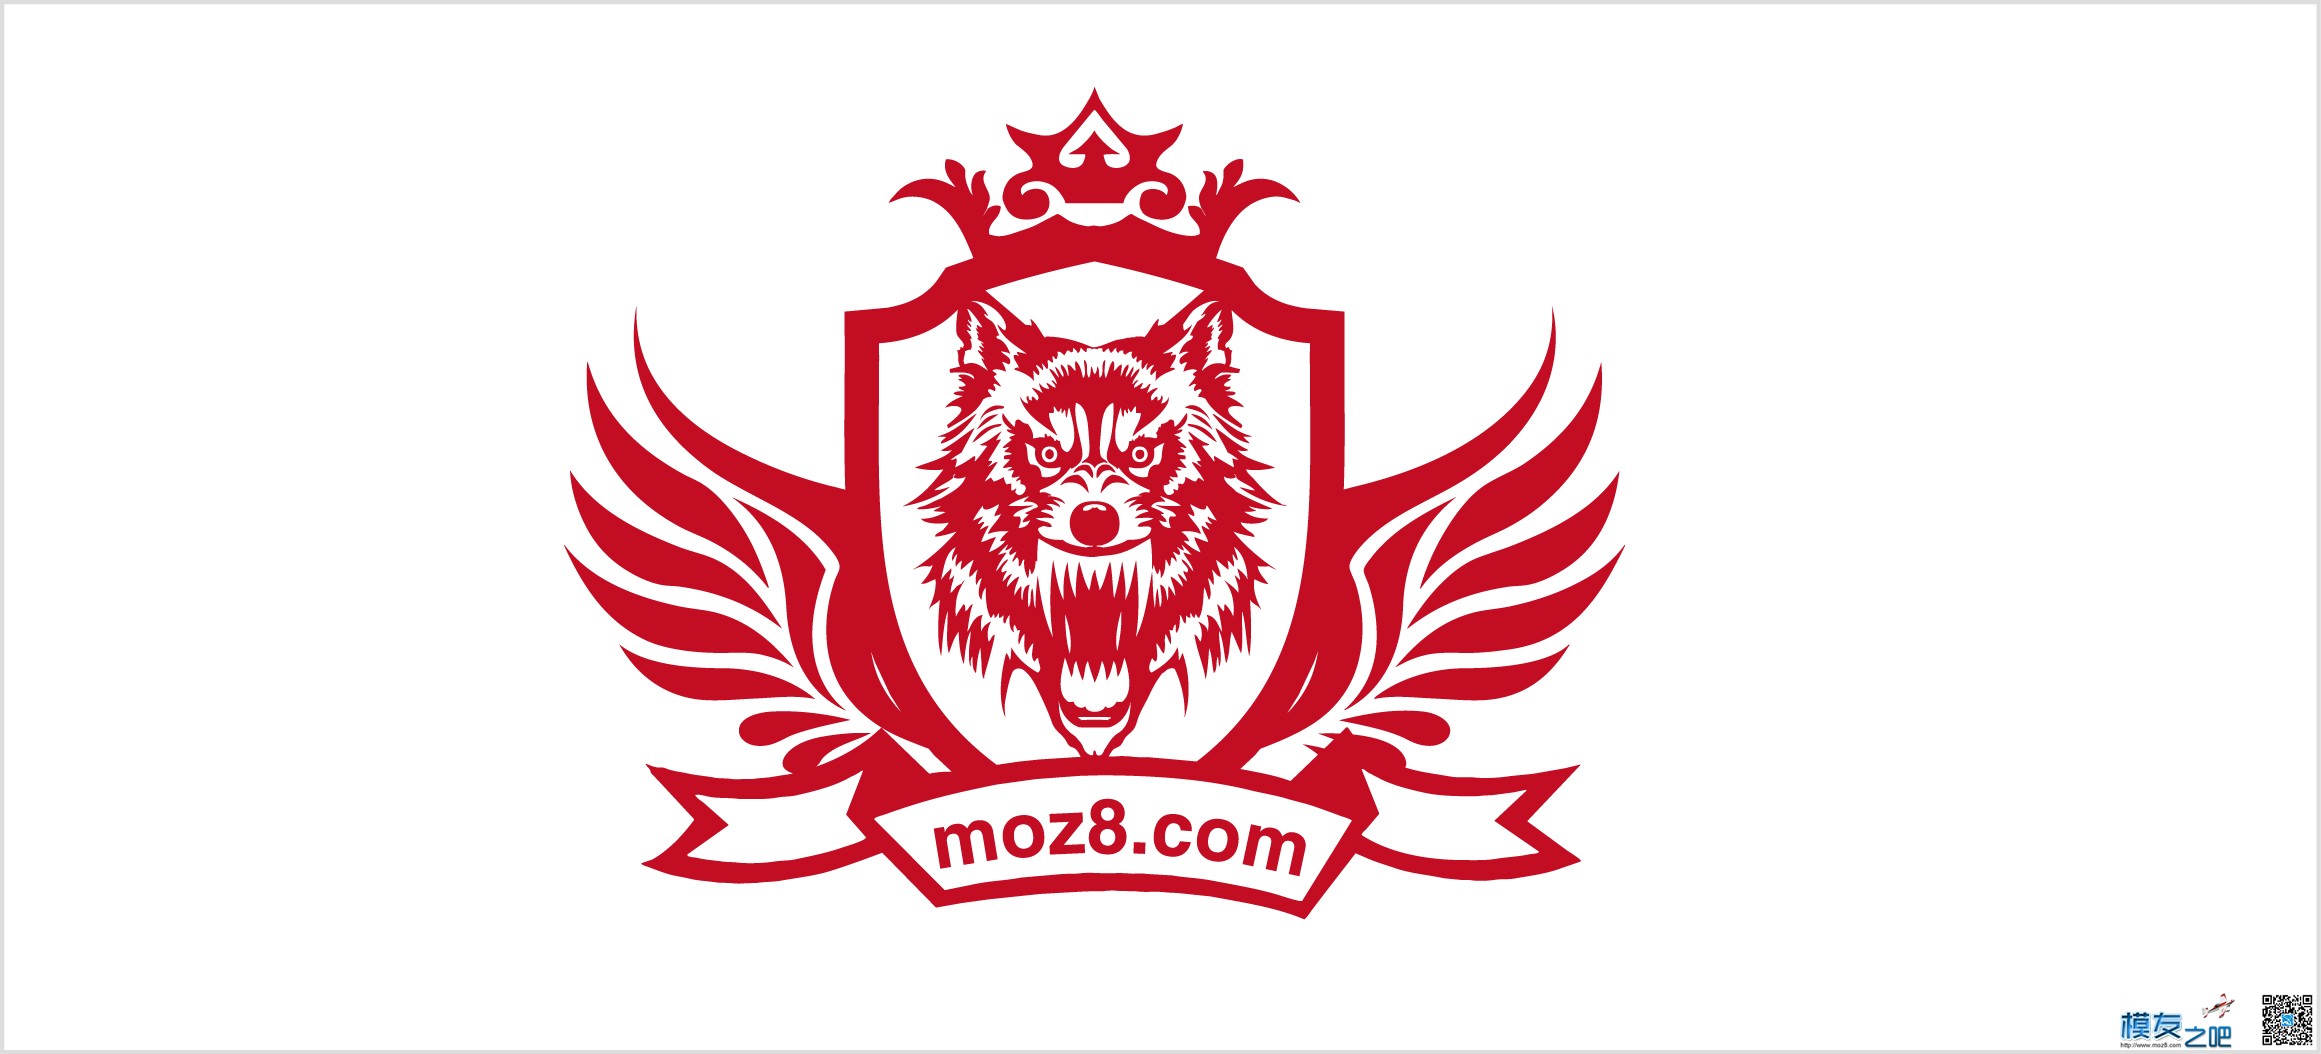 飞天狼的新的logo 茅台的logo,飞天logo 作者:飞天狼 2642 